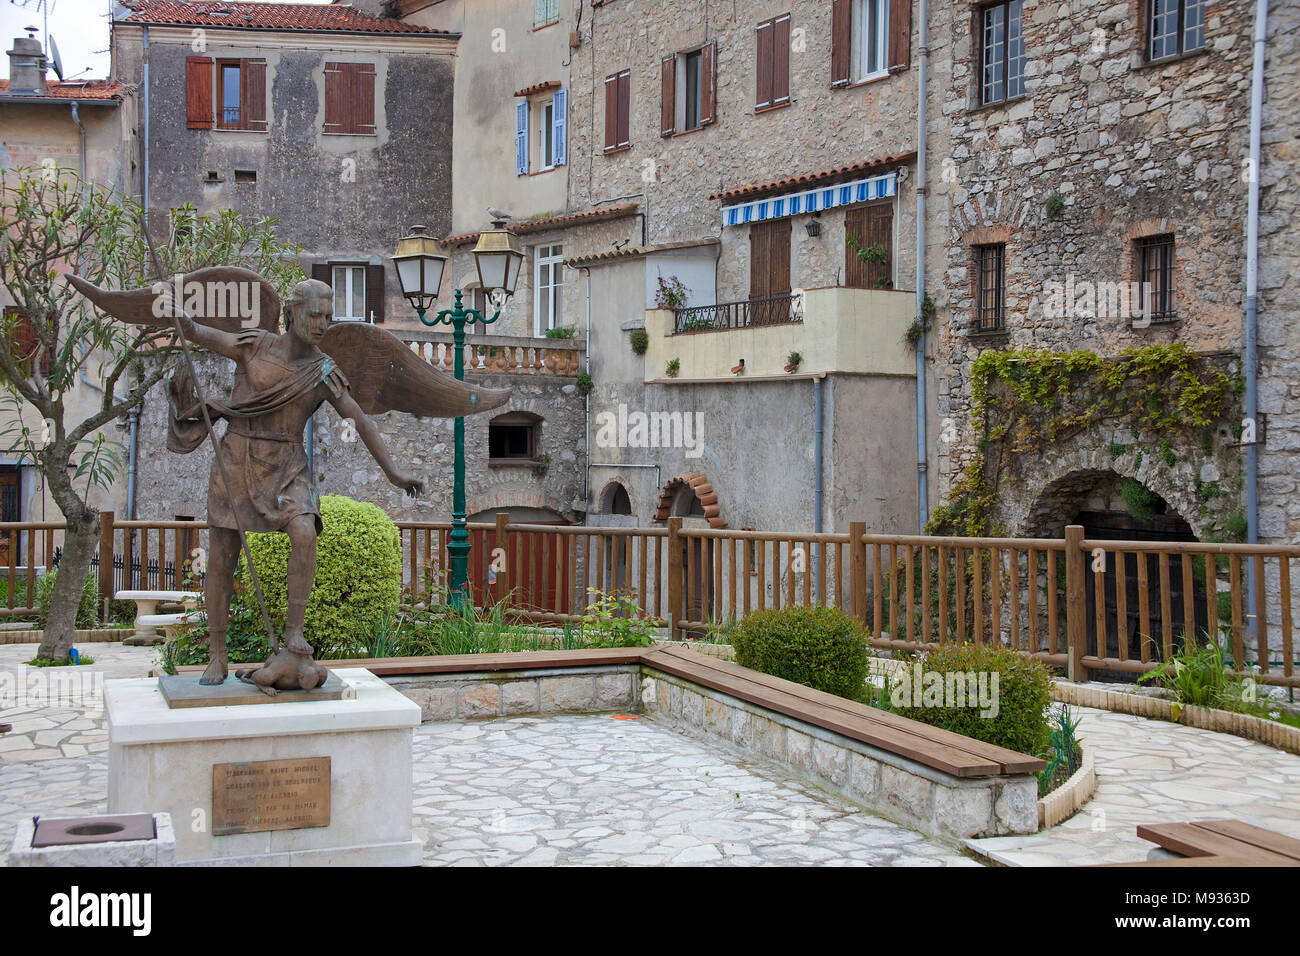 Saint Michel sculpture à vieille ville du village de La Turbie, au sud de la France, Var, Provence, Cote d'Azur, France, Europe Banque D'Images